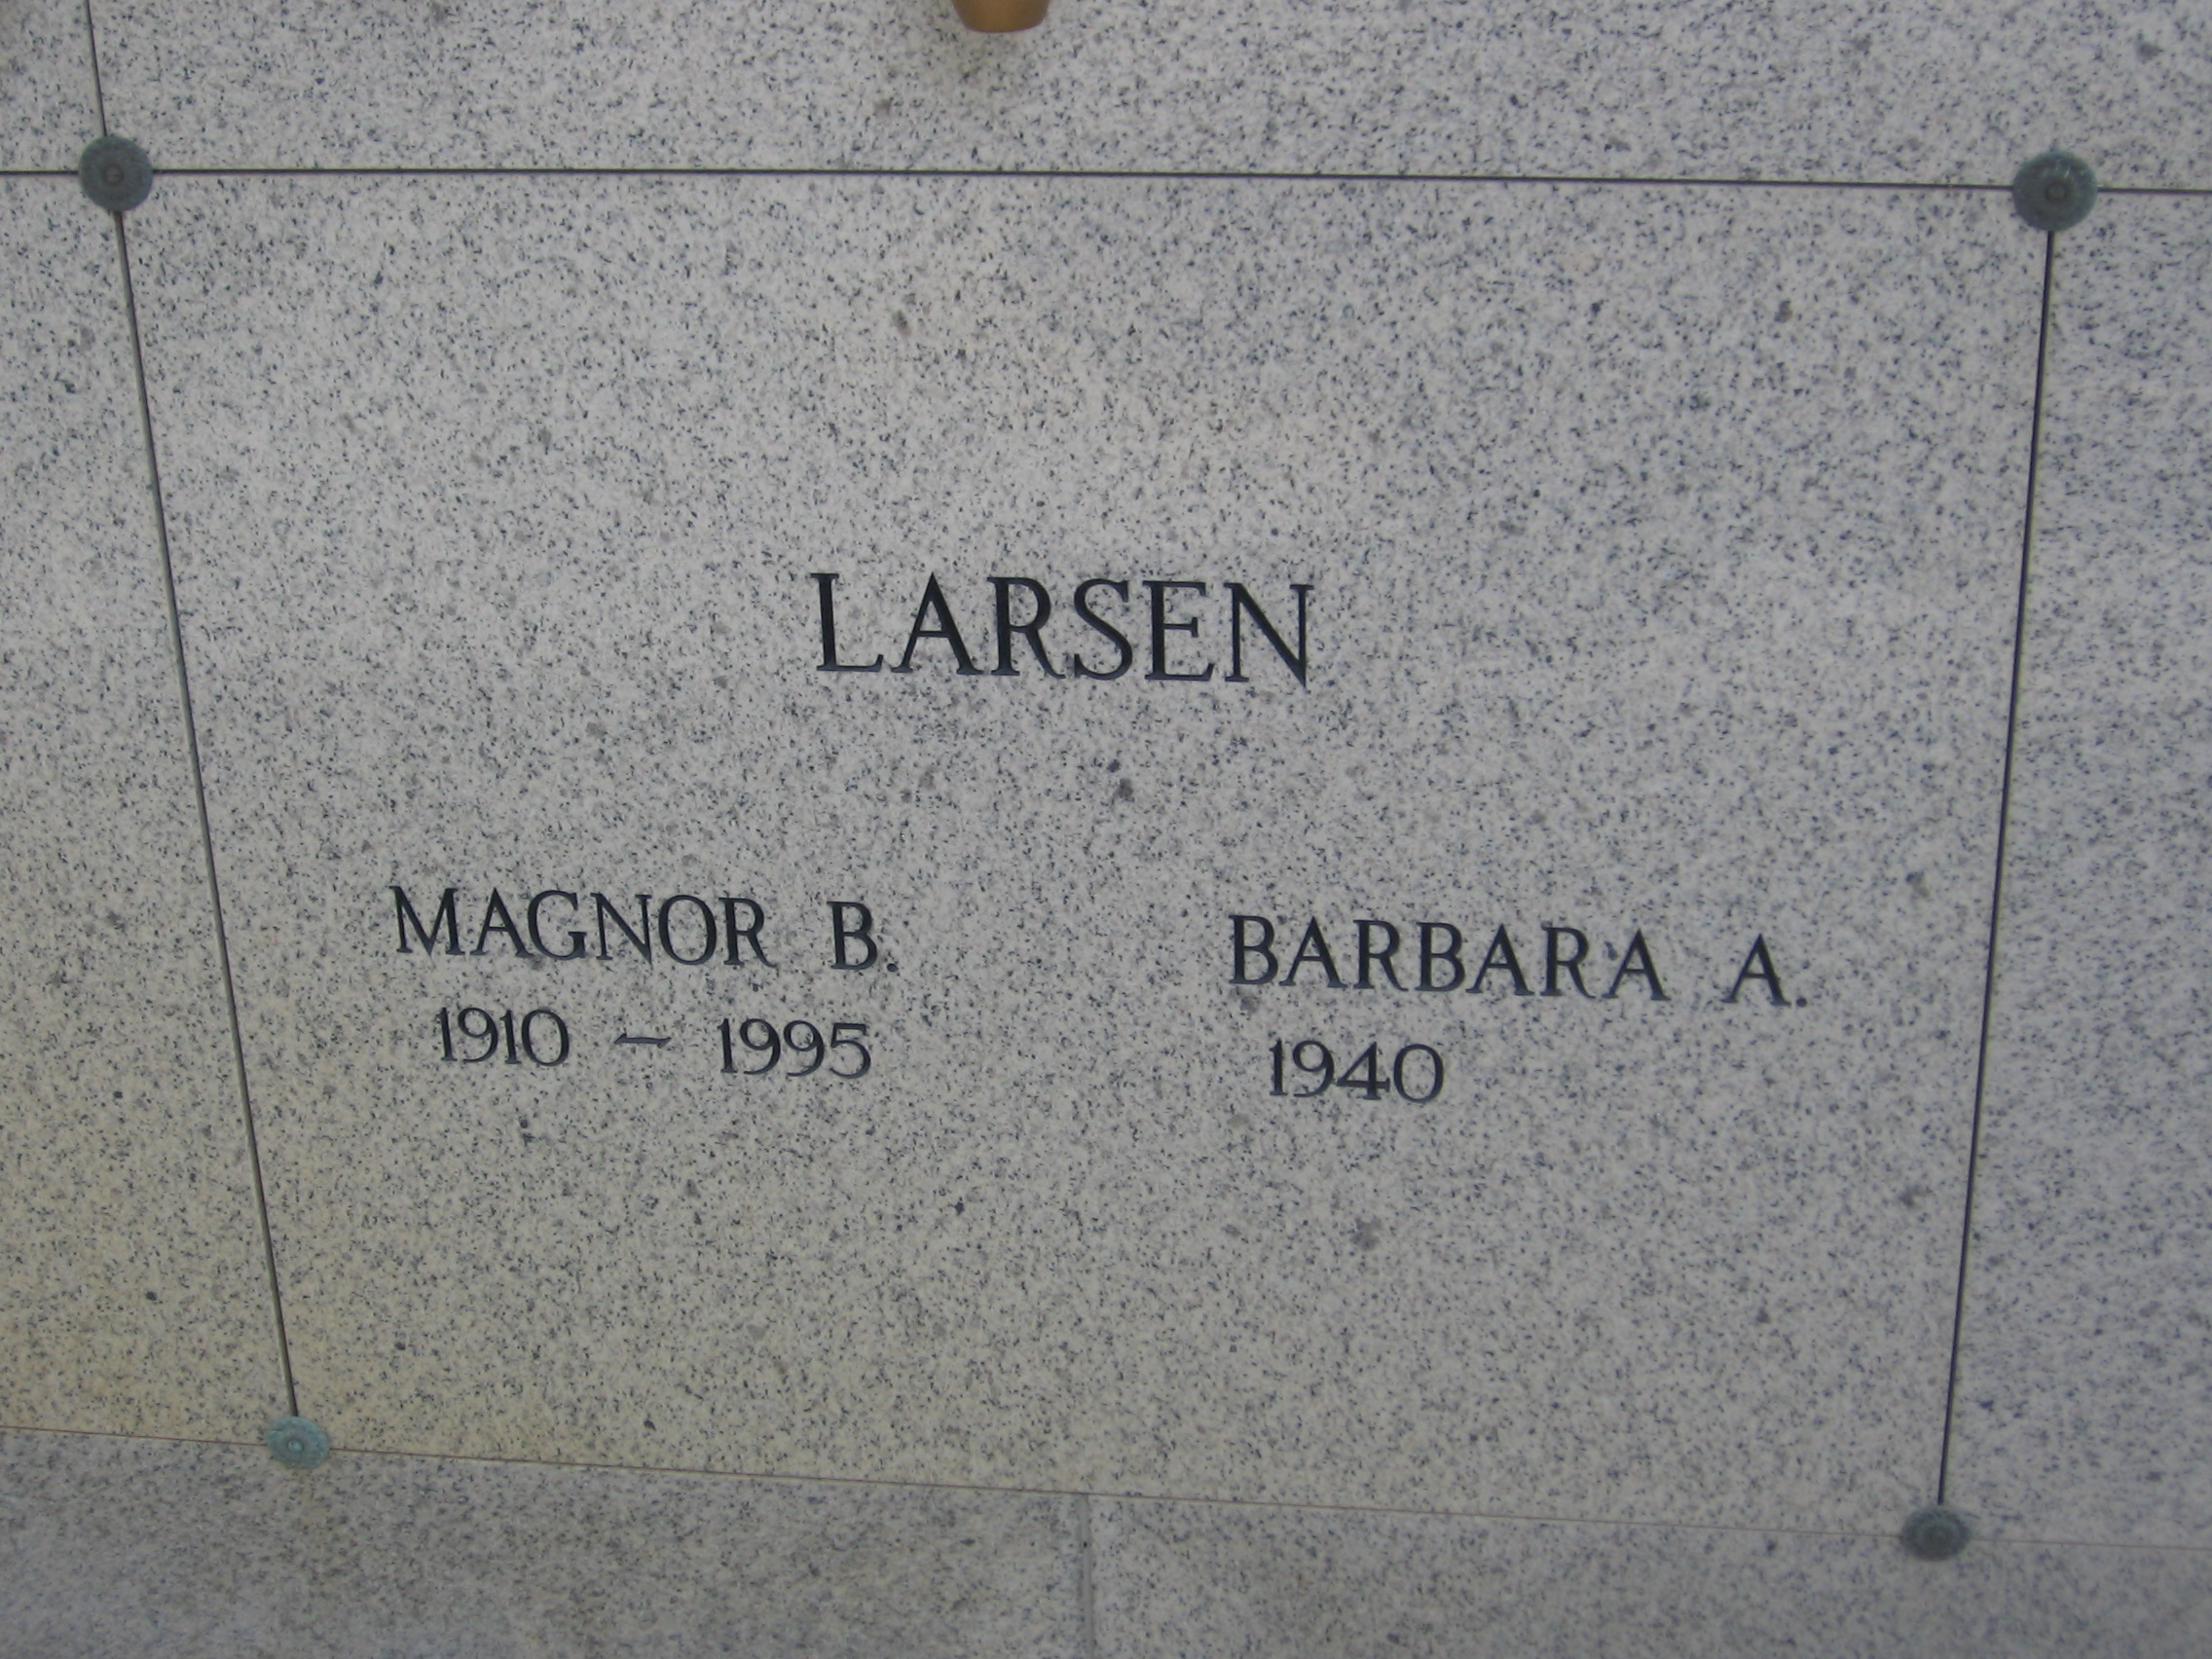 Barbara A Larsen